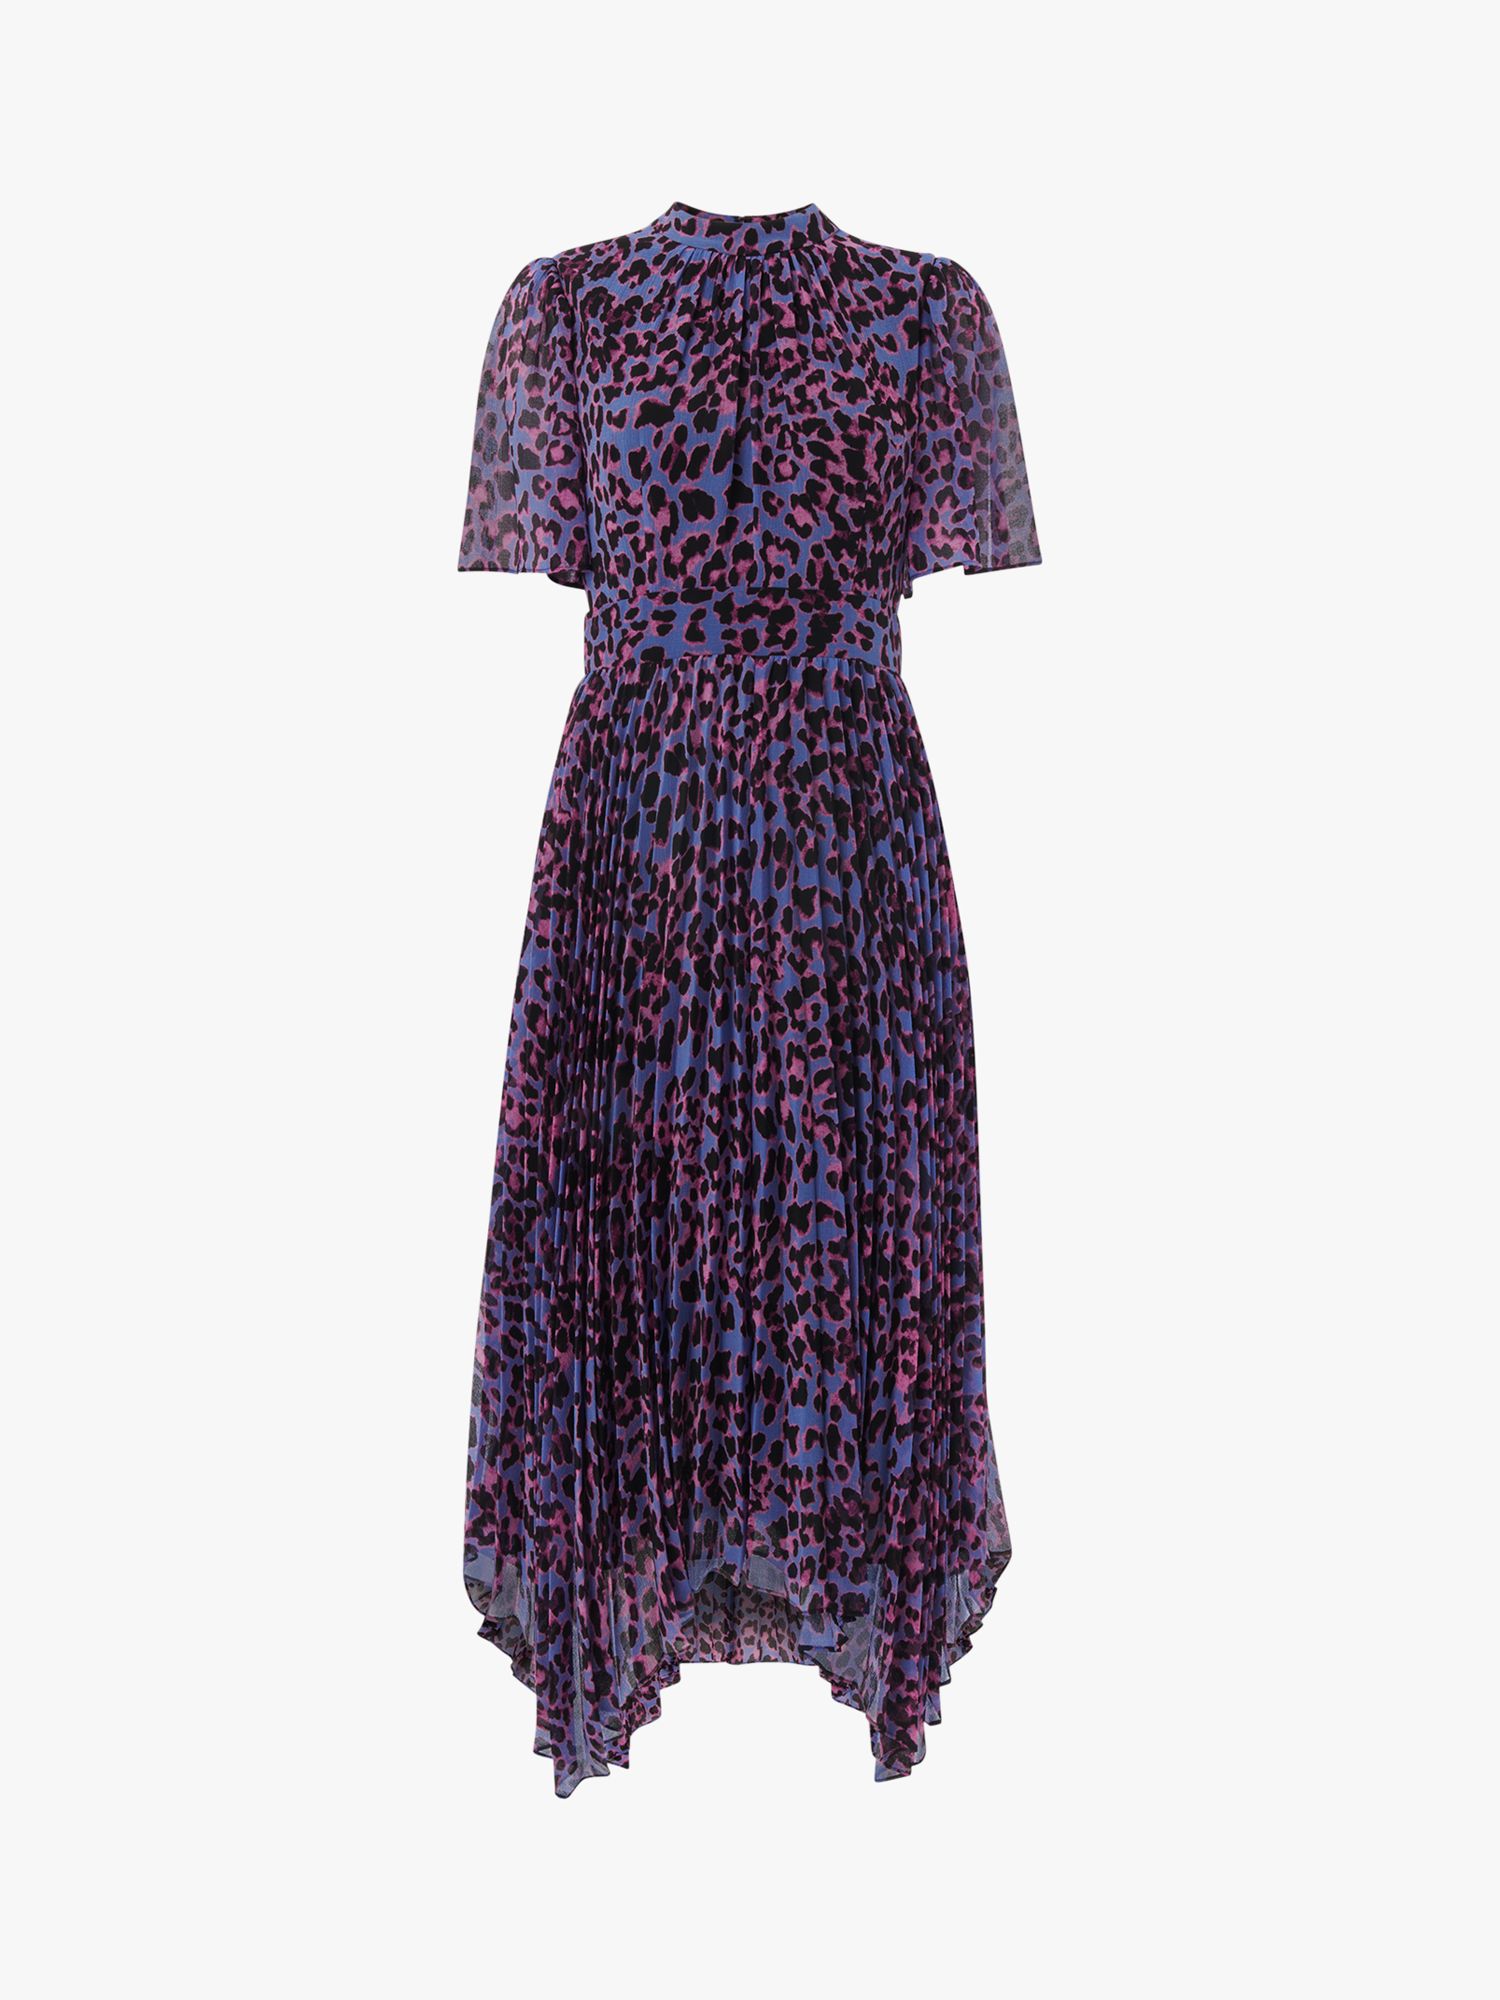 Whistles Animal Cheetah Pleat Midi Dress, Purple/Multi, 6